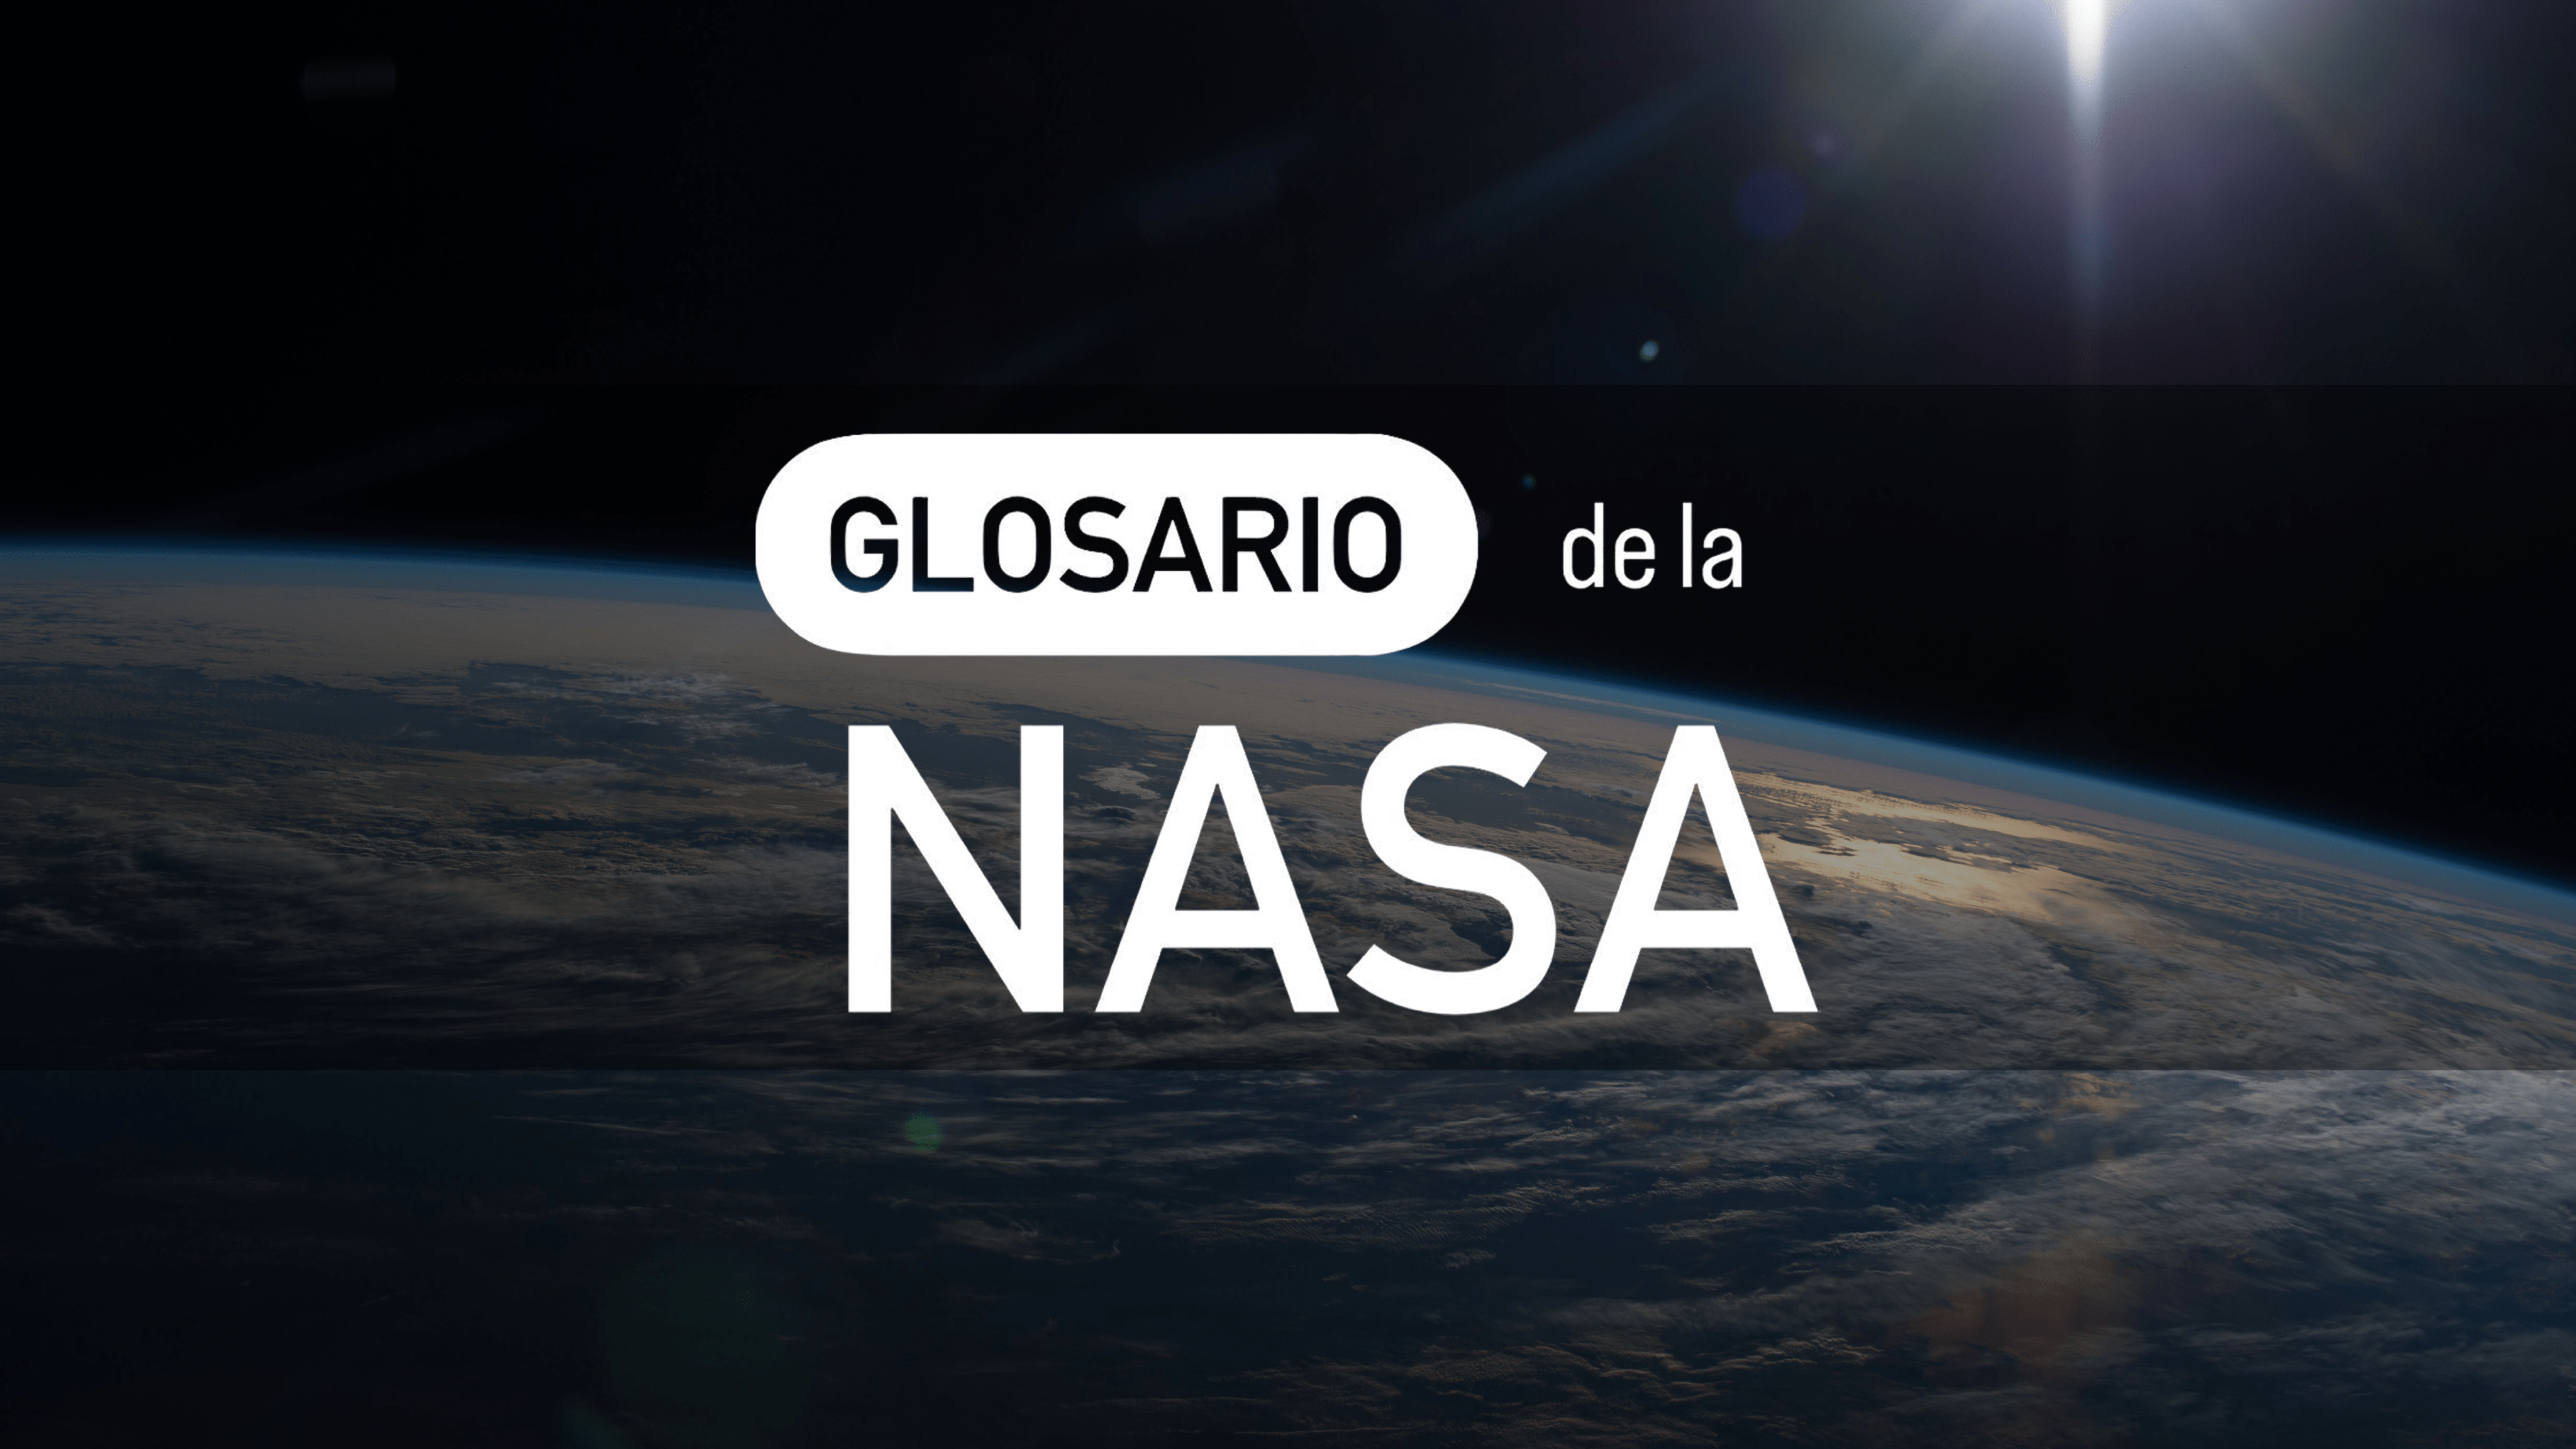 Thumbnail de la serie de videos del Glosario de la NASA. Muestra una imagen de una porción de la Tierra vista desde el espacio, con el resplandor del Sol visto en la esquina superior derecha. El fondo es negro. En el medio, se lee Glosario de la NASA en letras grandes y blancas.